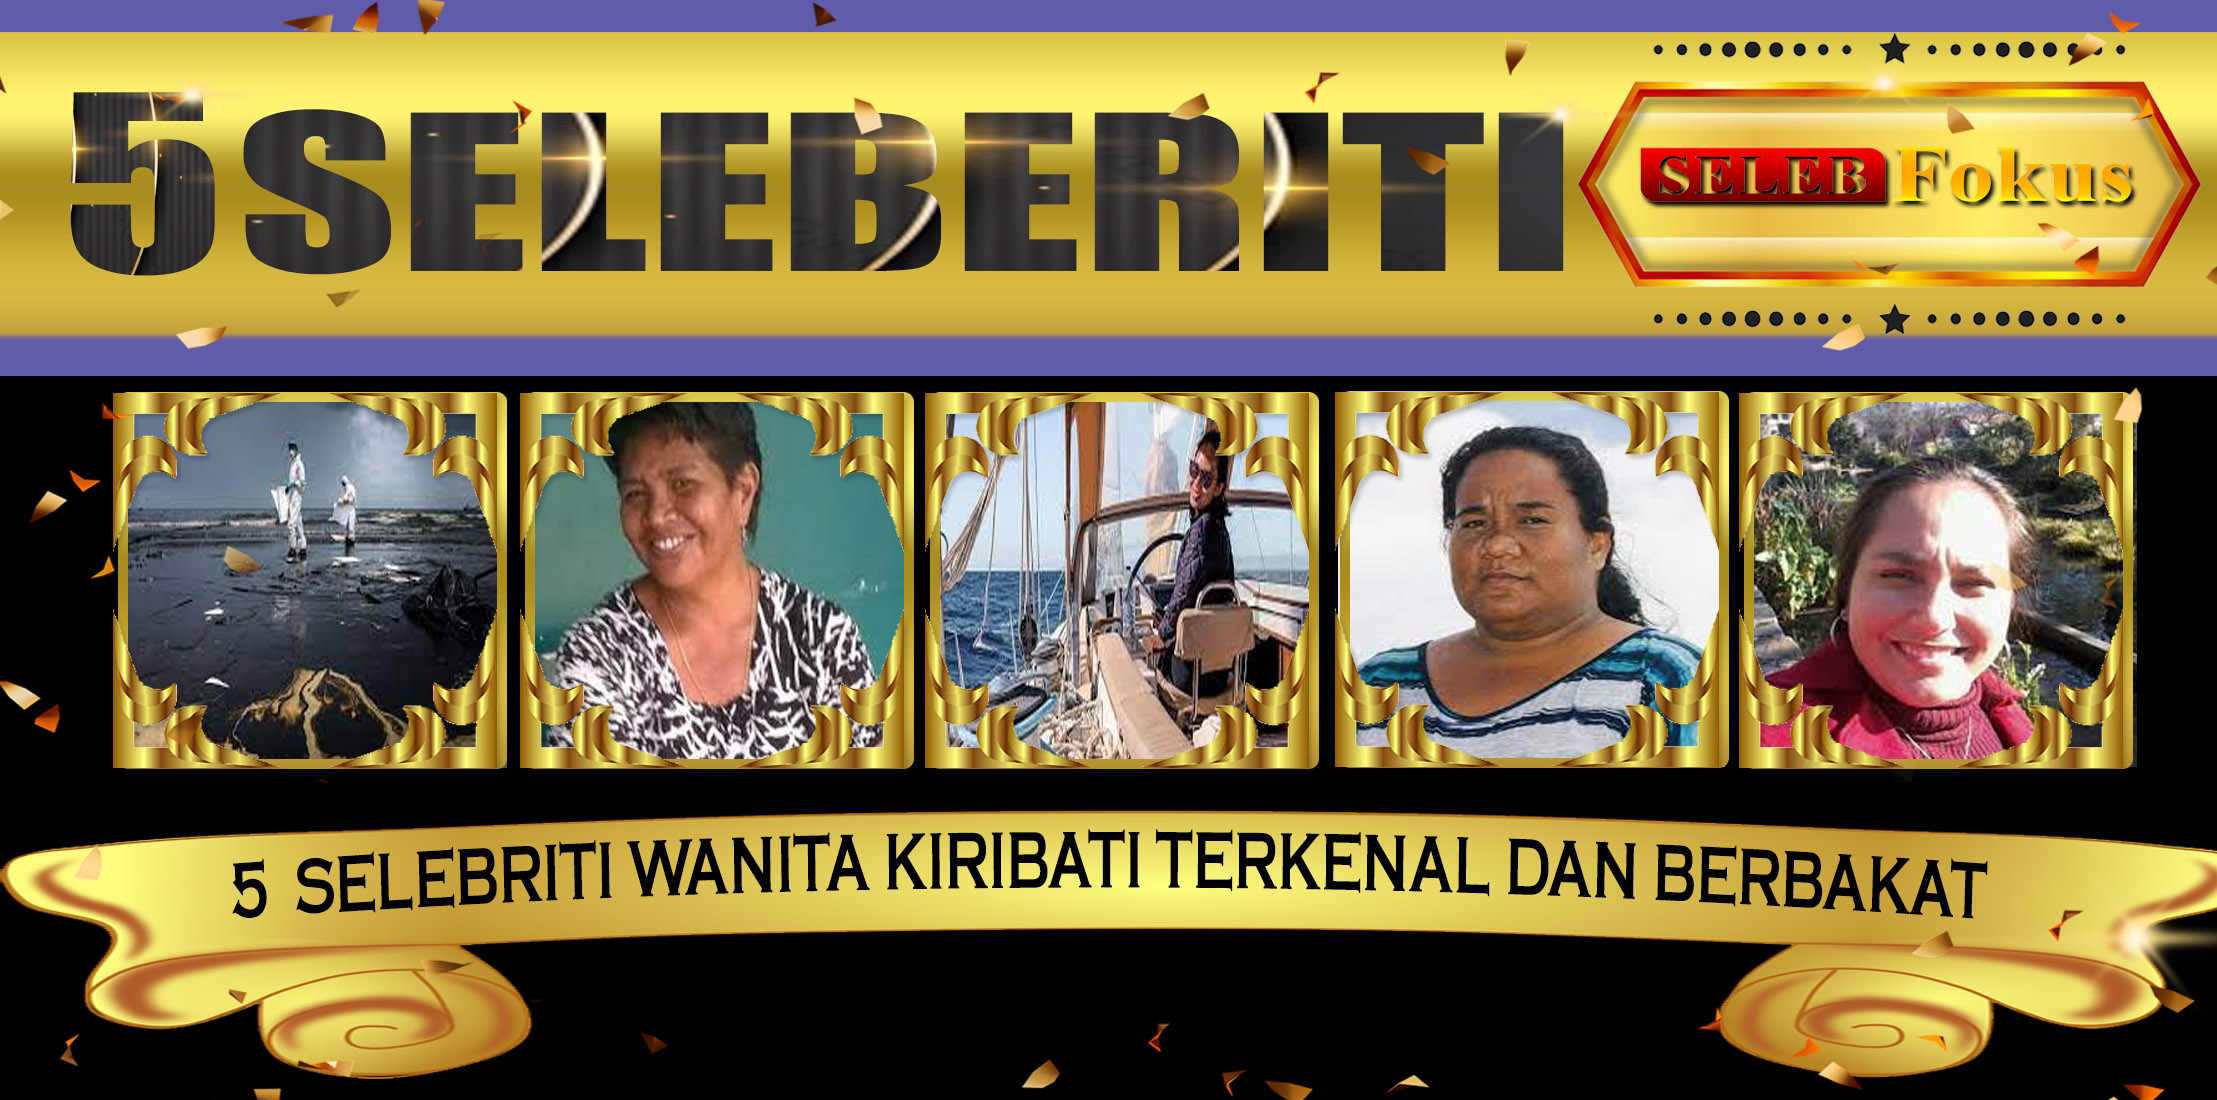 5 Selebriti Wanita Kiribati Terkenal Dan Berbakat